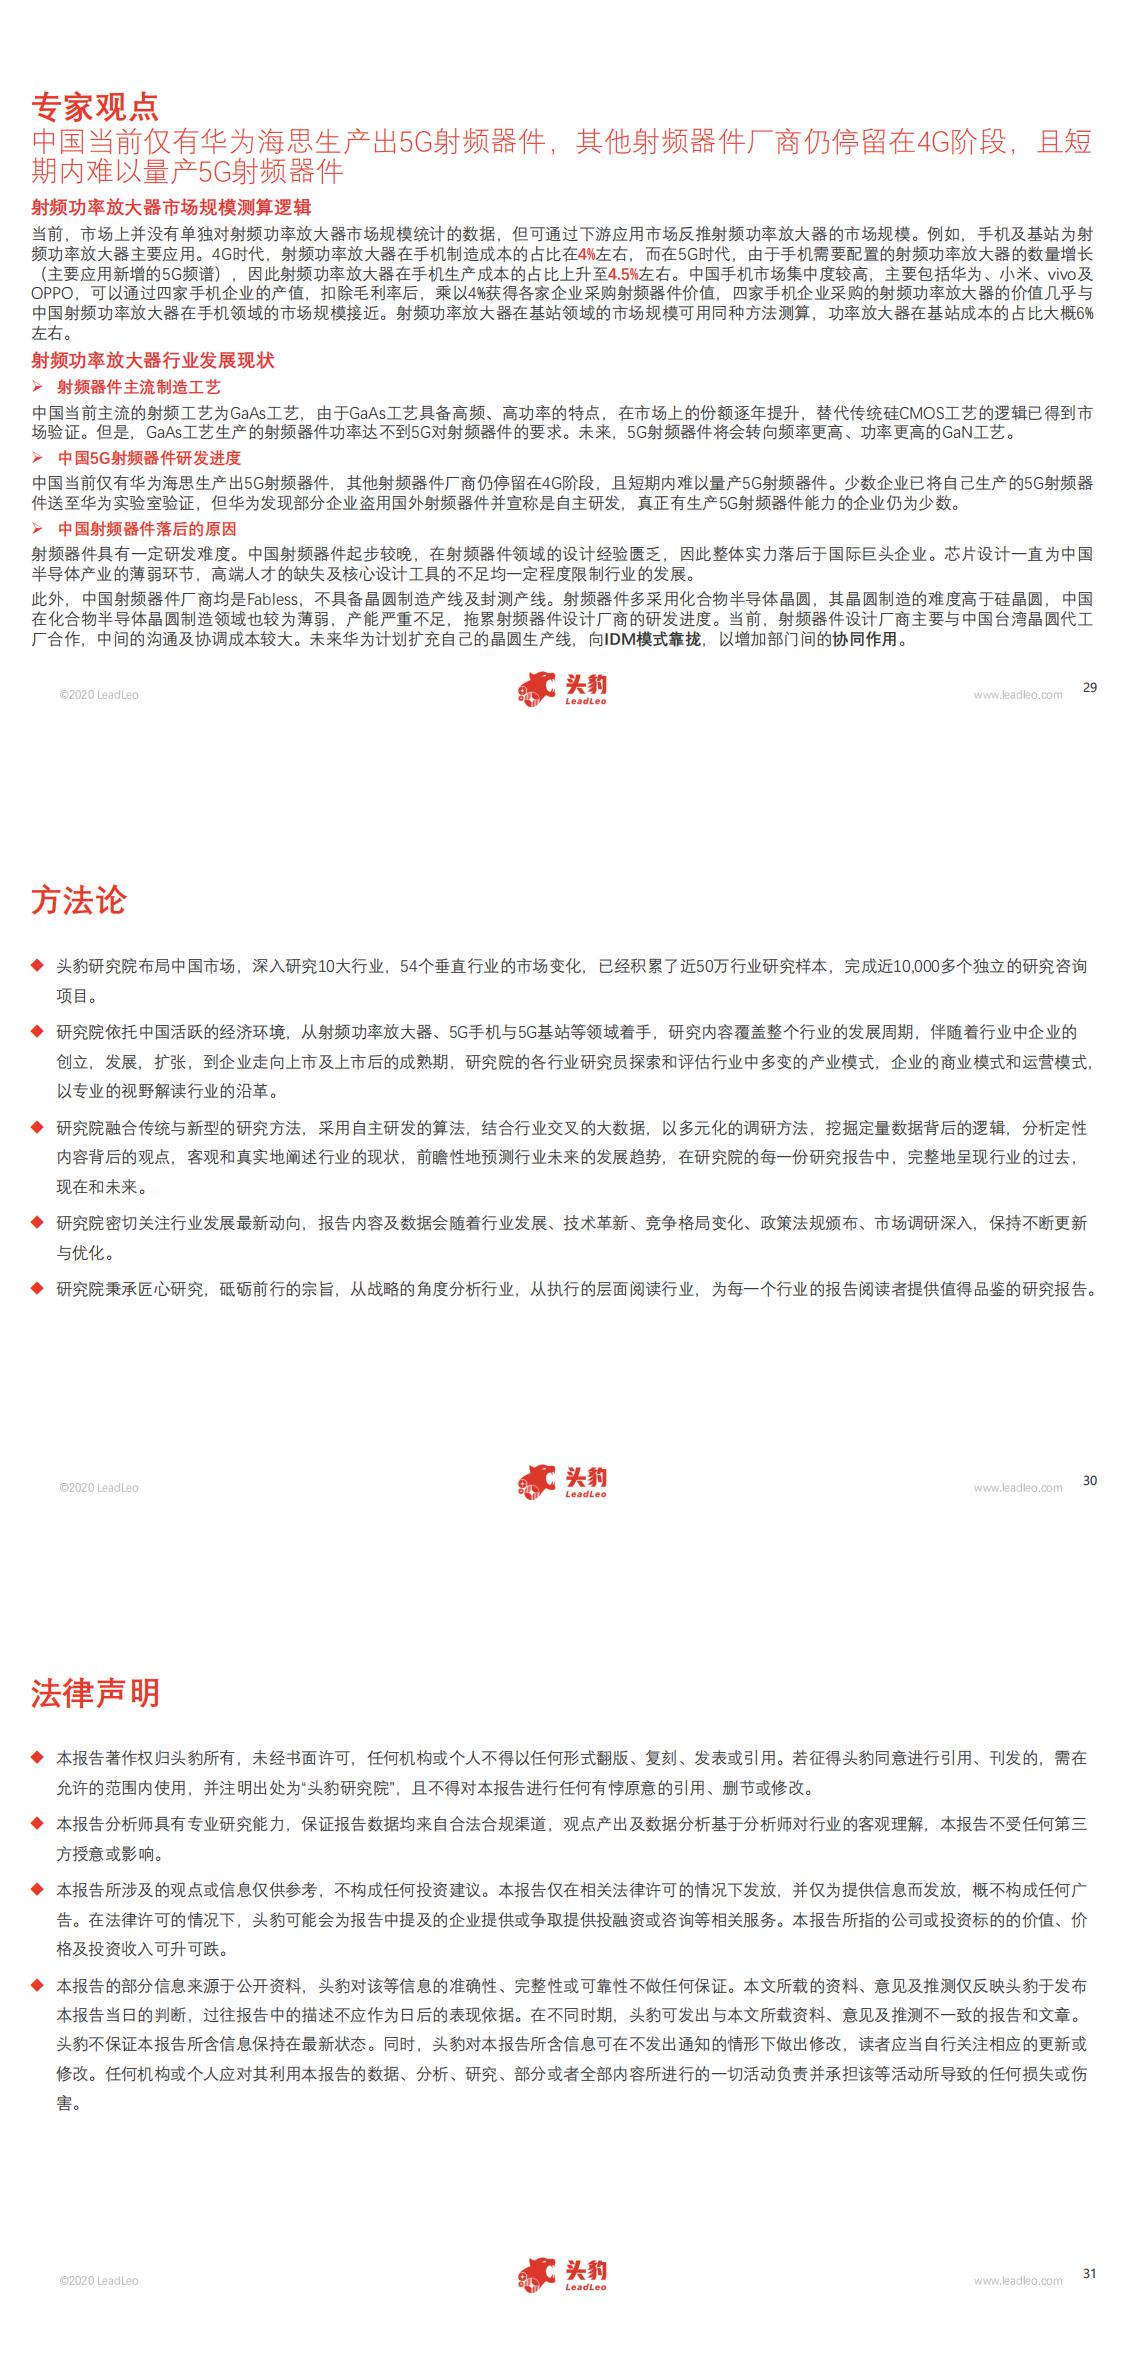 【头豹】2020年中国射频功率放大器行业概览_1.jpg